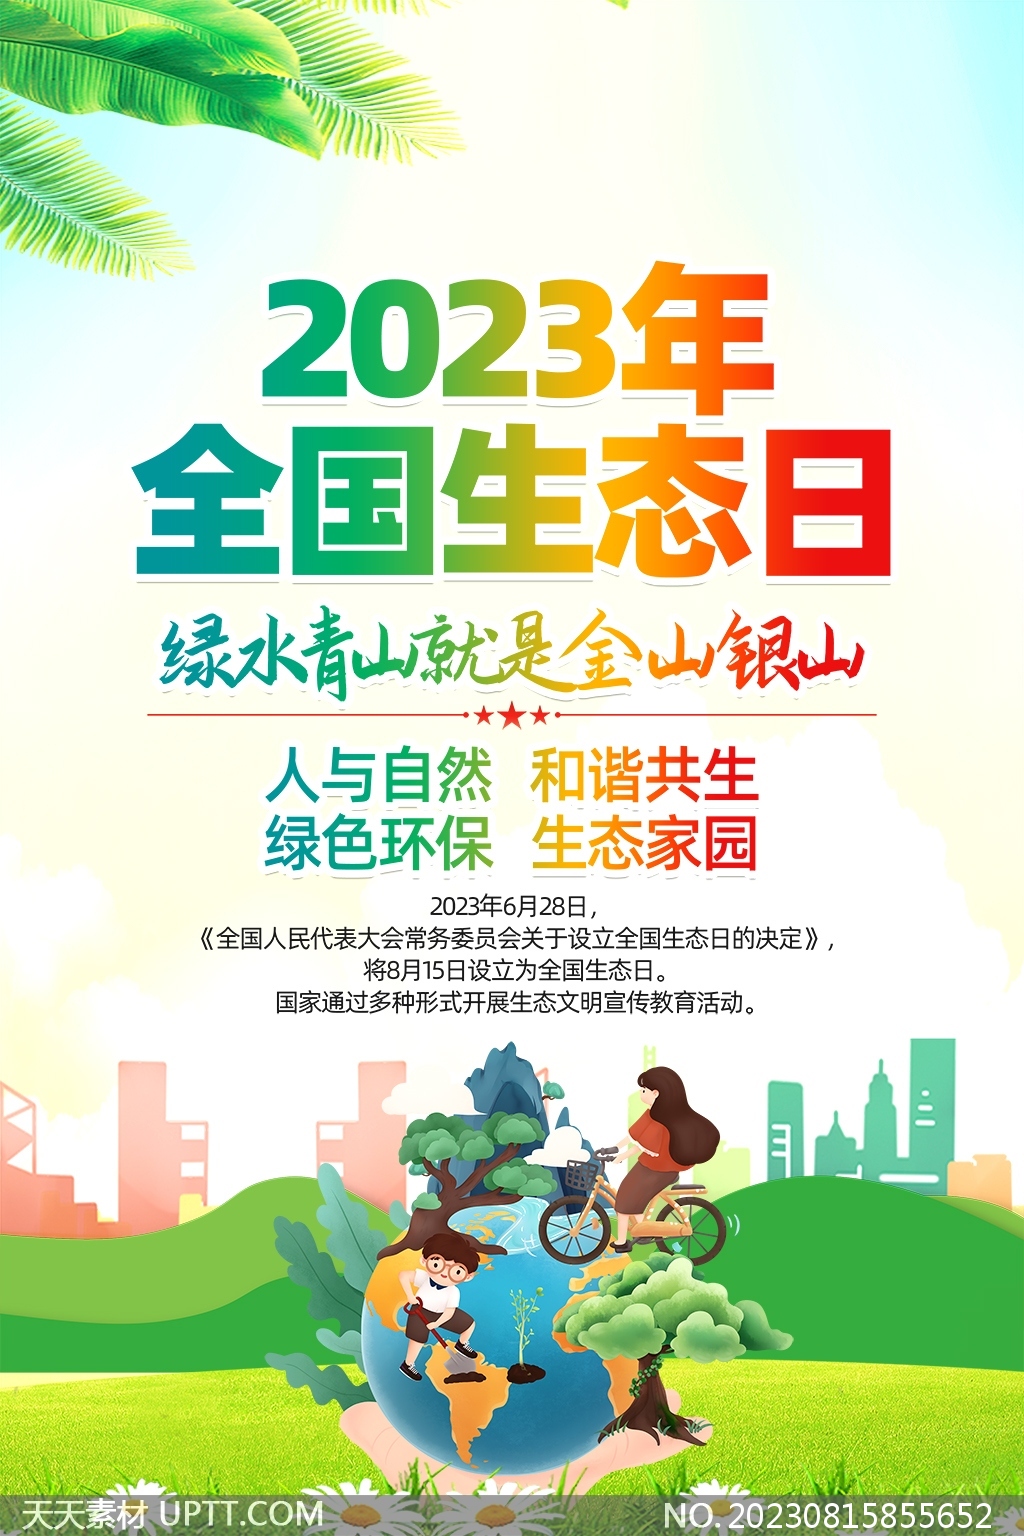 2023全国生态日宣传绿色海报PSD素材